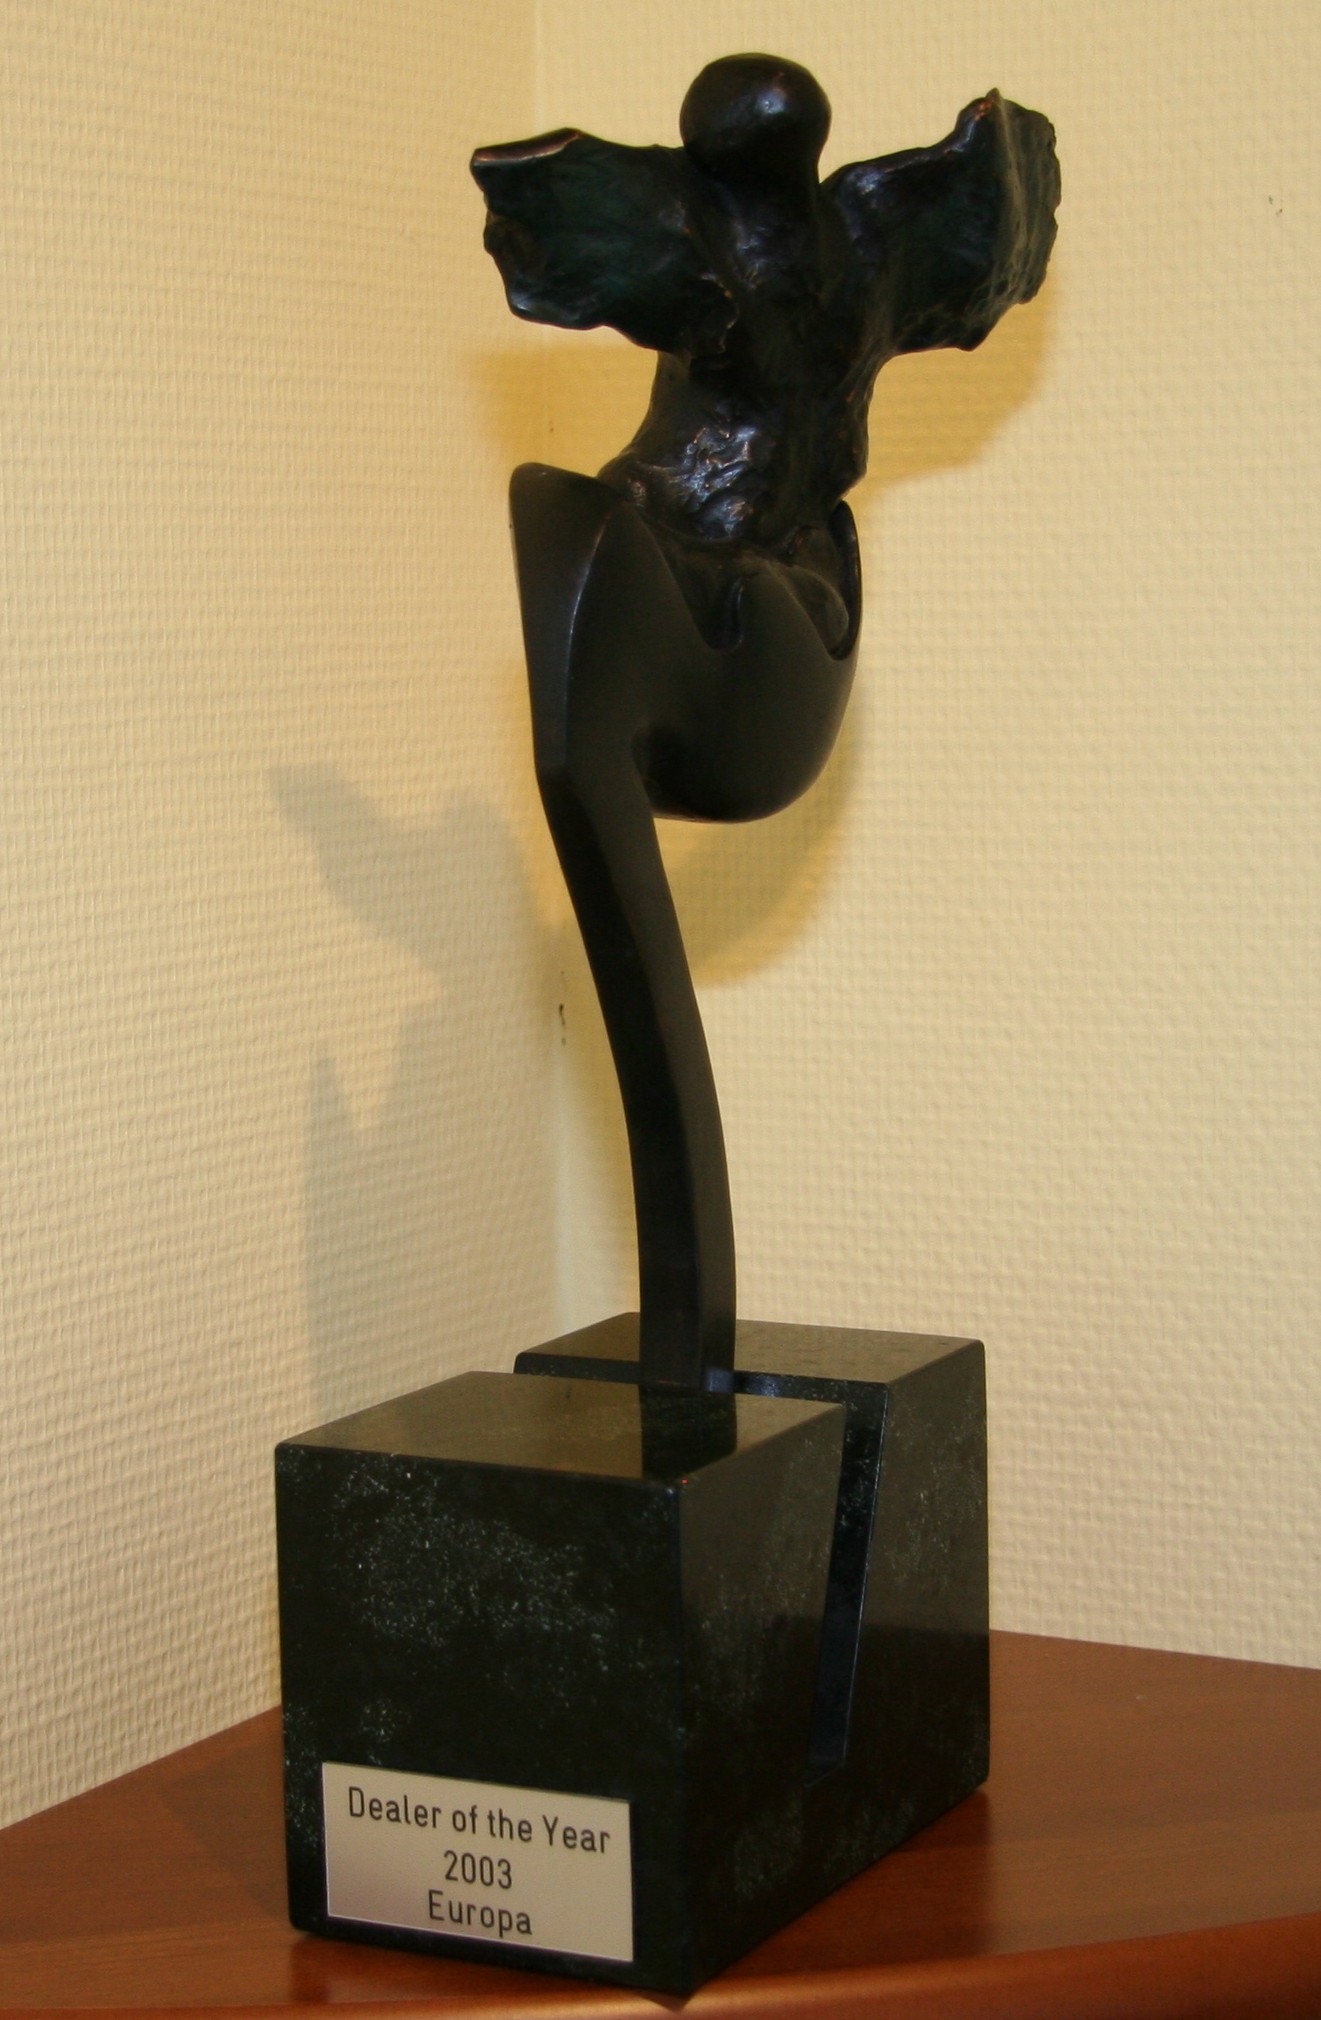 GRAMMER Awards 2003